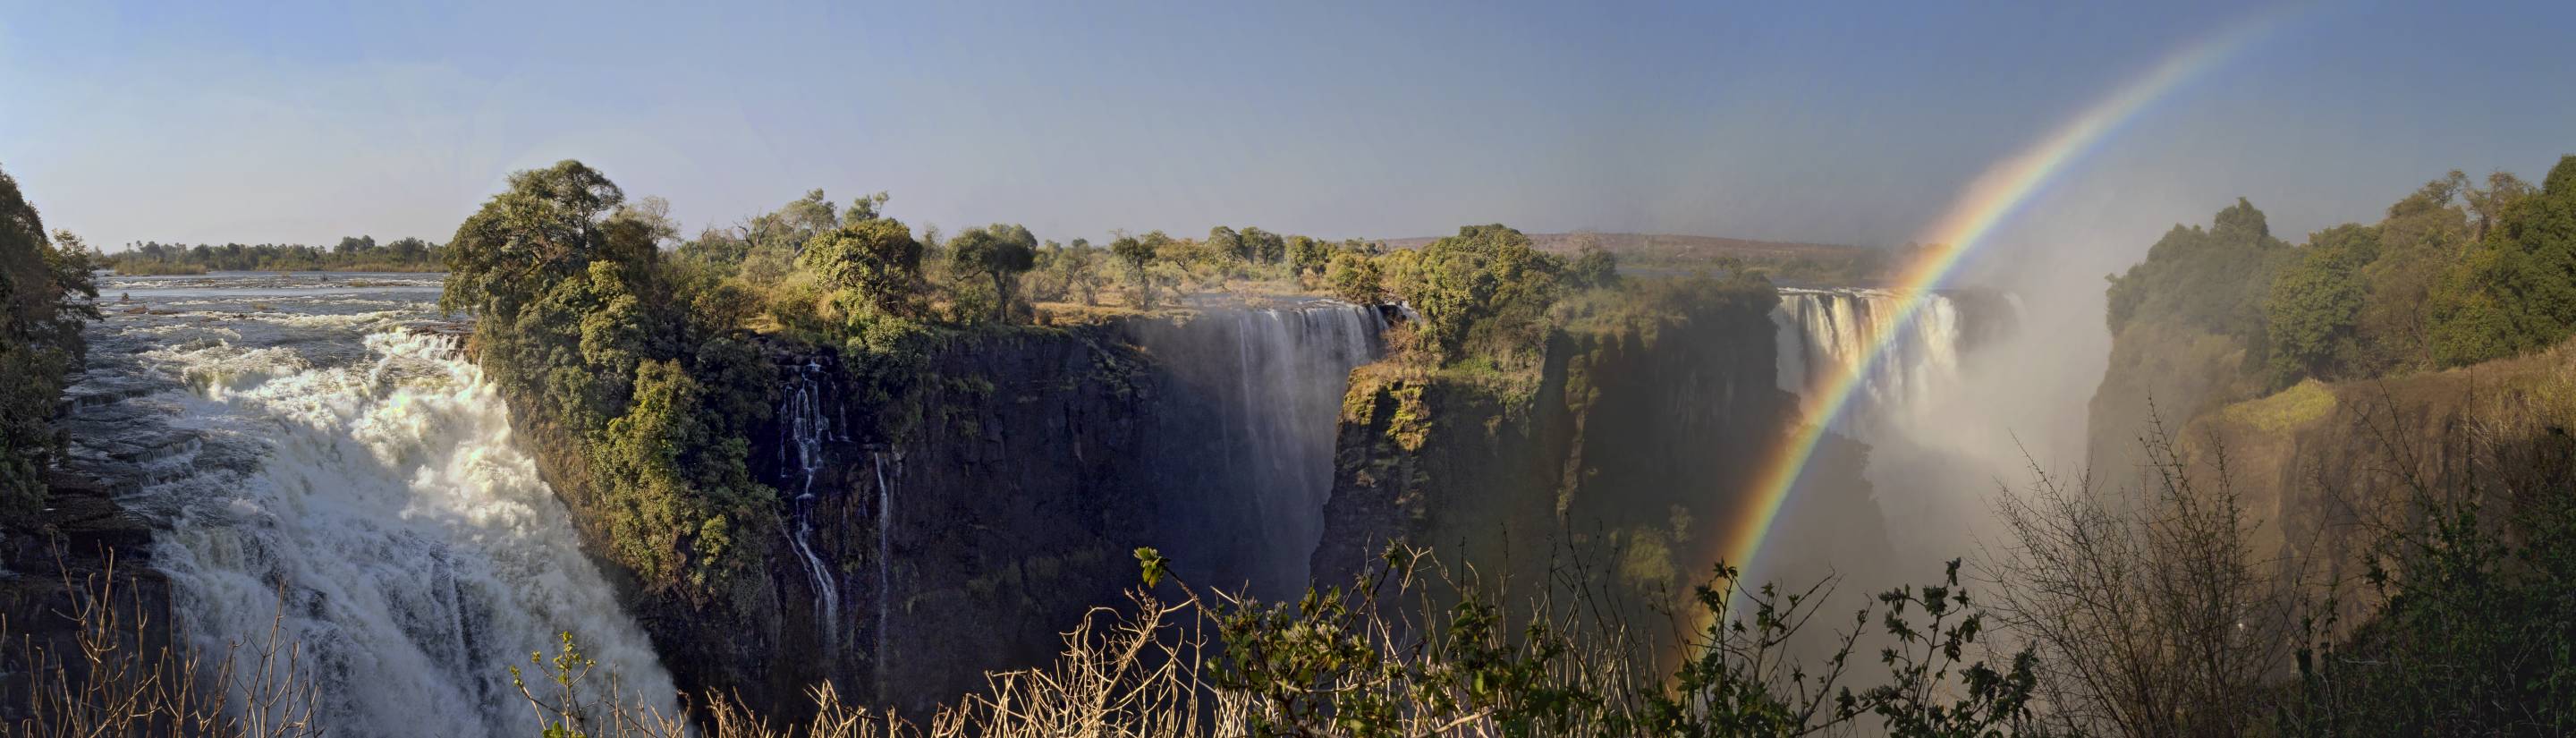 Victoriafälle – Die größten Wasserfälle Afrikas